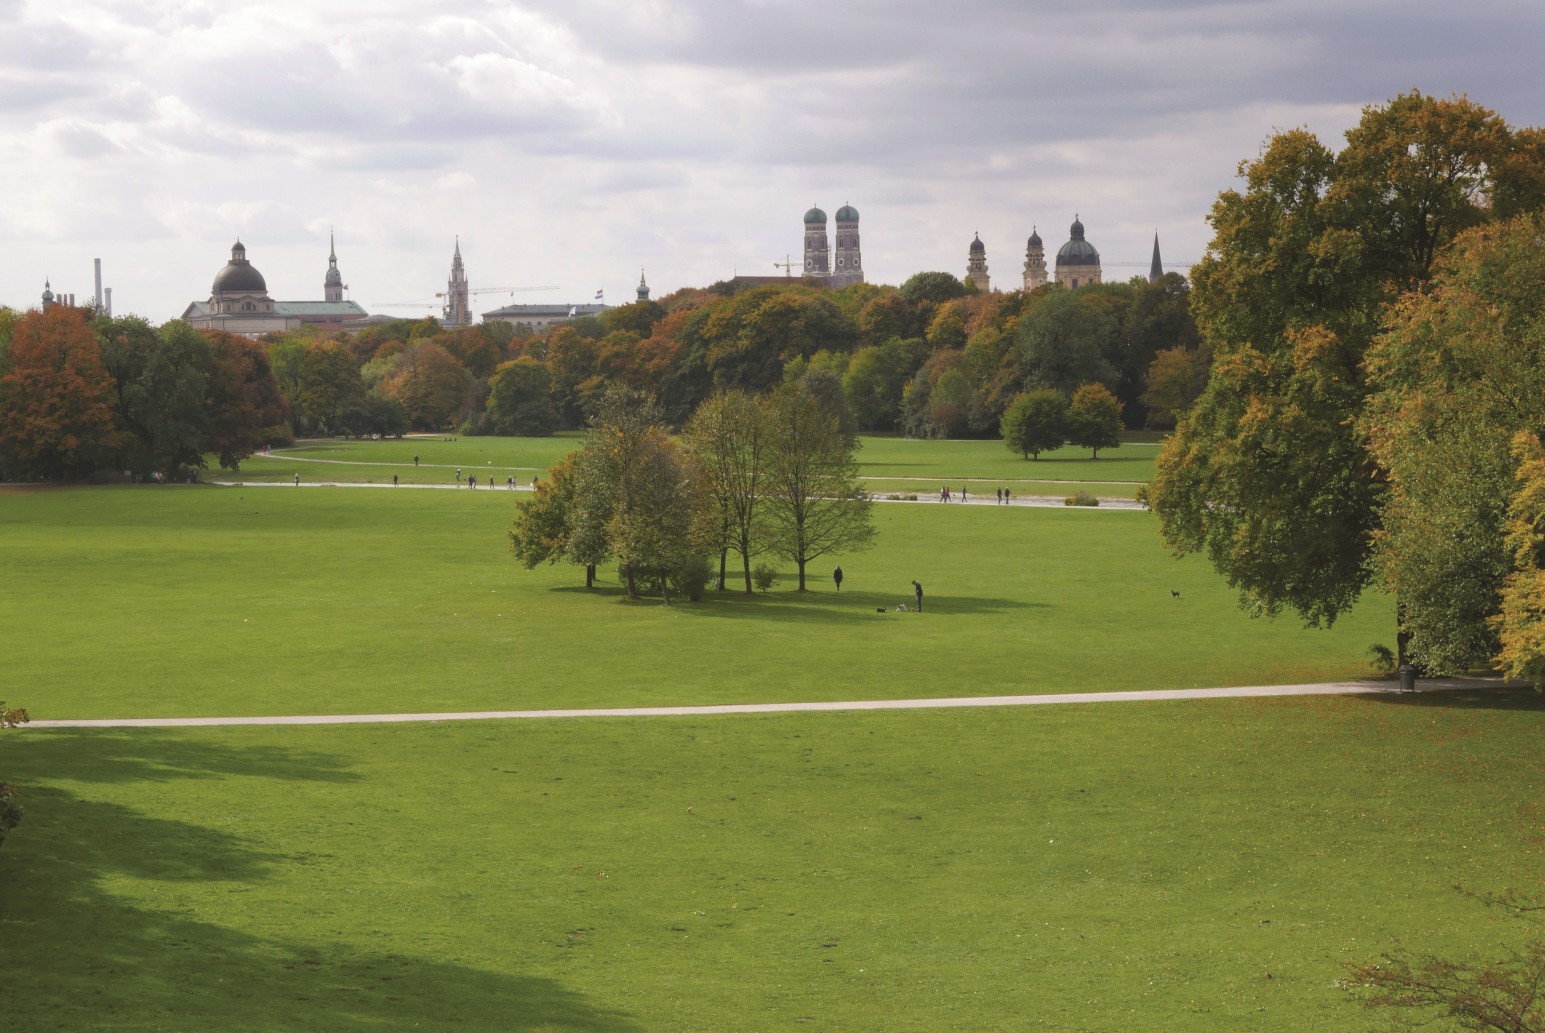 Das Bild zeigt den Blick in den Englischen Garten in München. Man sieht große Wiesenflächen, die von Wegen durchzogen sind und auf denen einzelne Baumgruppen stehen. Im Hintergrund sieht man die Stadtsilhouette von München. 